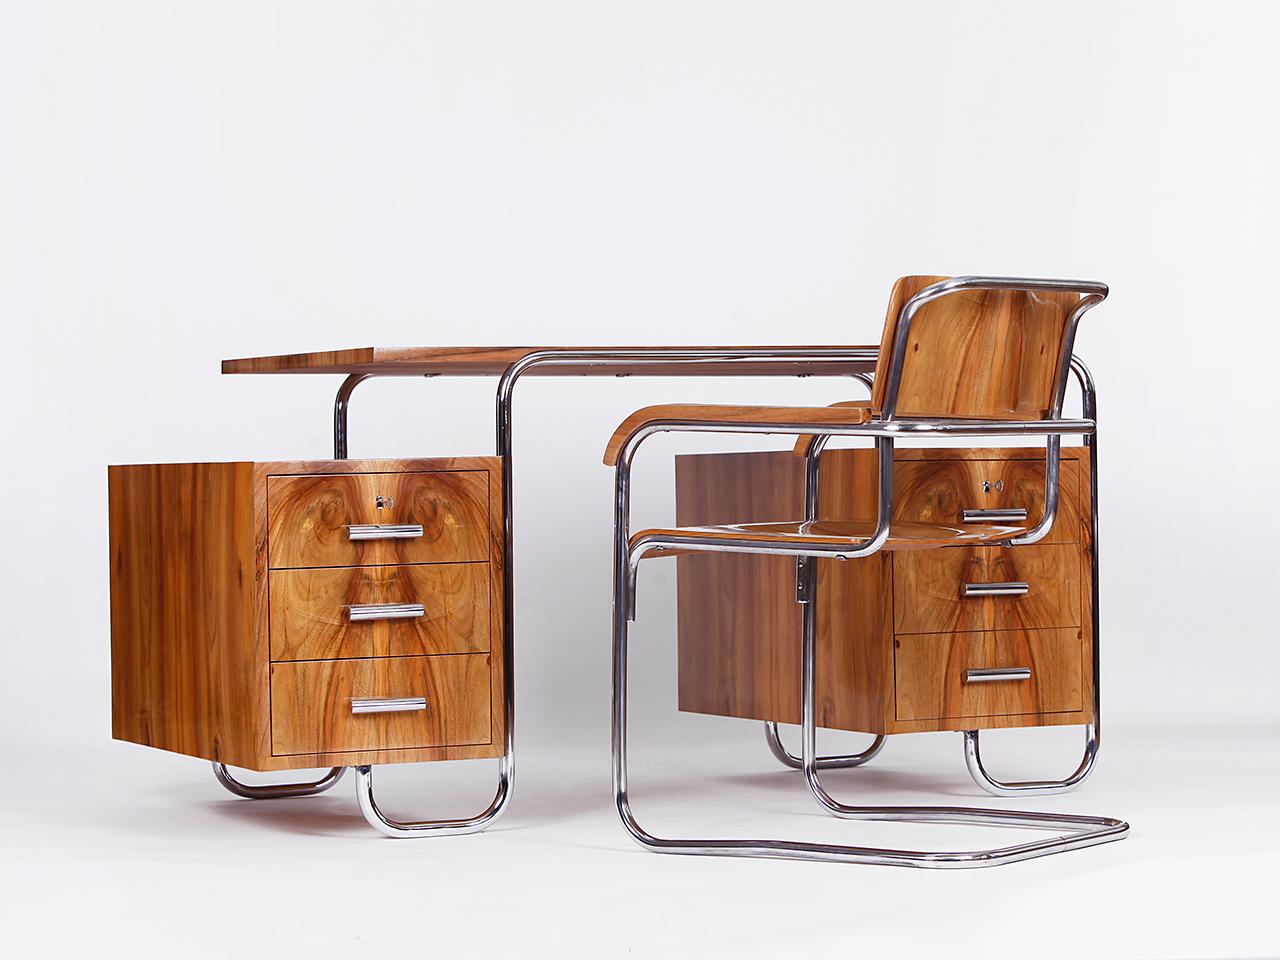 Funktionalistischer Stahlrohrschreibtisch von Hynek Gottwald und Stuhl von Slezak 1930er Jahre.
Dieser einzigartige Schreibtisch mit einem sehr schönen Nussbaumfurnier wurde komplett restauriert. 
Der passende Stuhl stammt von Slezak und wurde